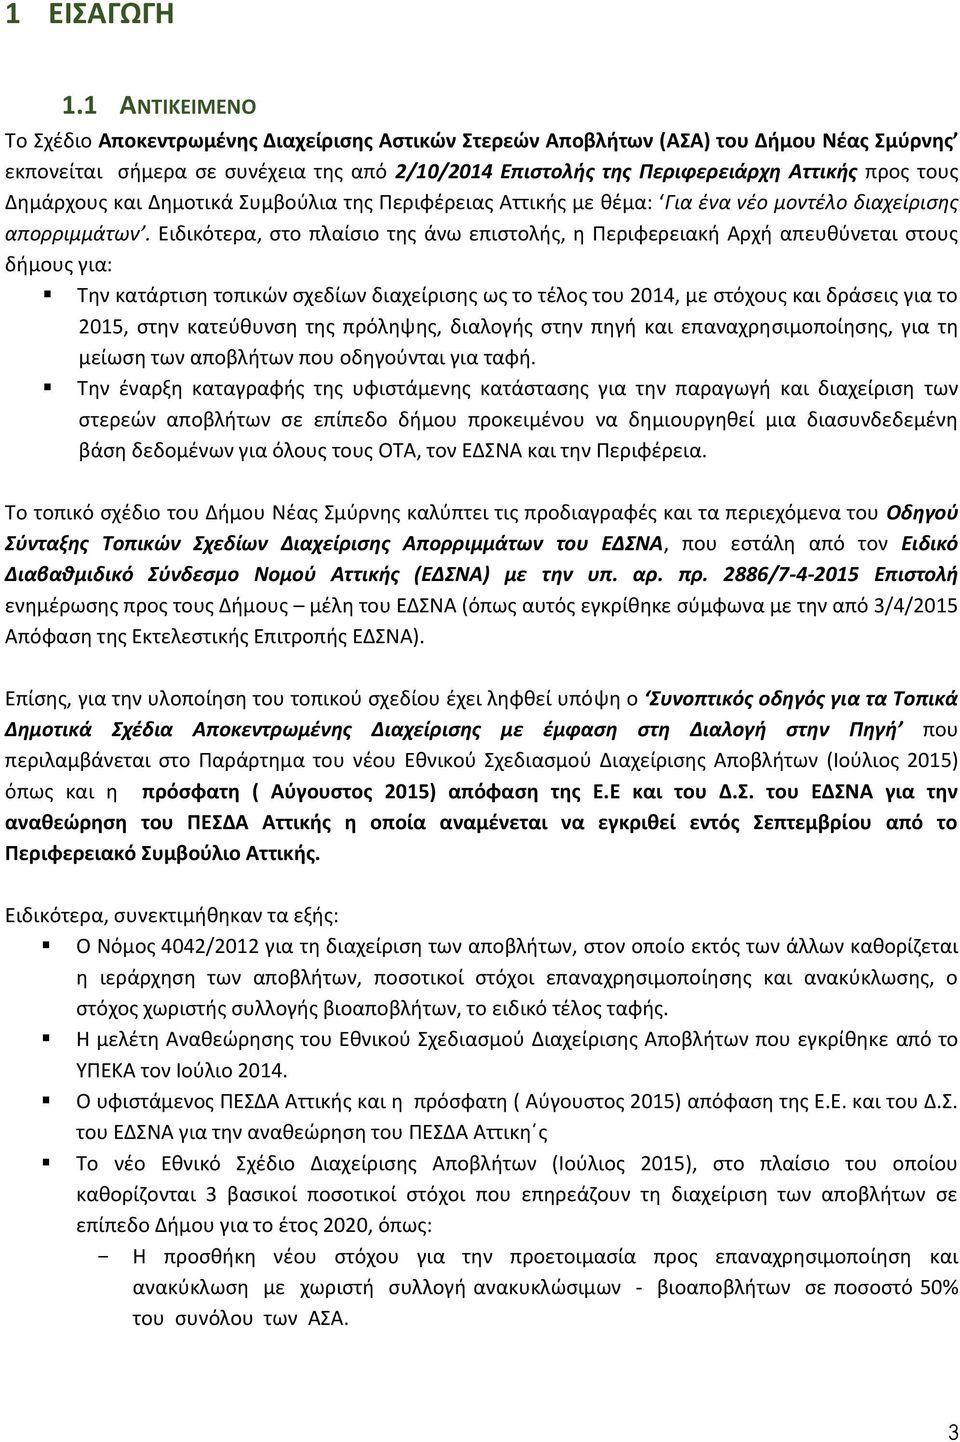 Δημάρχους και Δημοτικά Συμβούλια της Περιφέρειας Αττικής με θέμα: Για ένα νέο μοντέλο διαχείρισης απορριμμάτων.